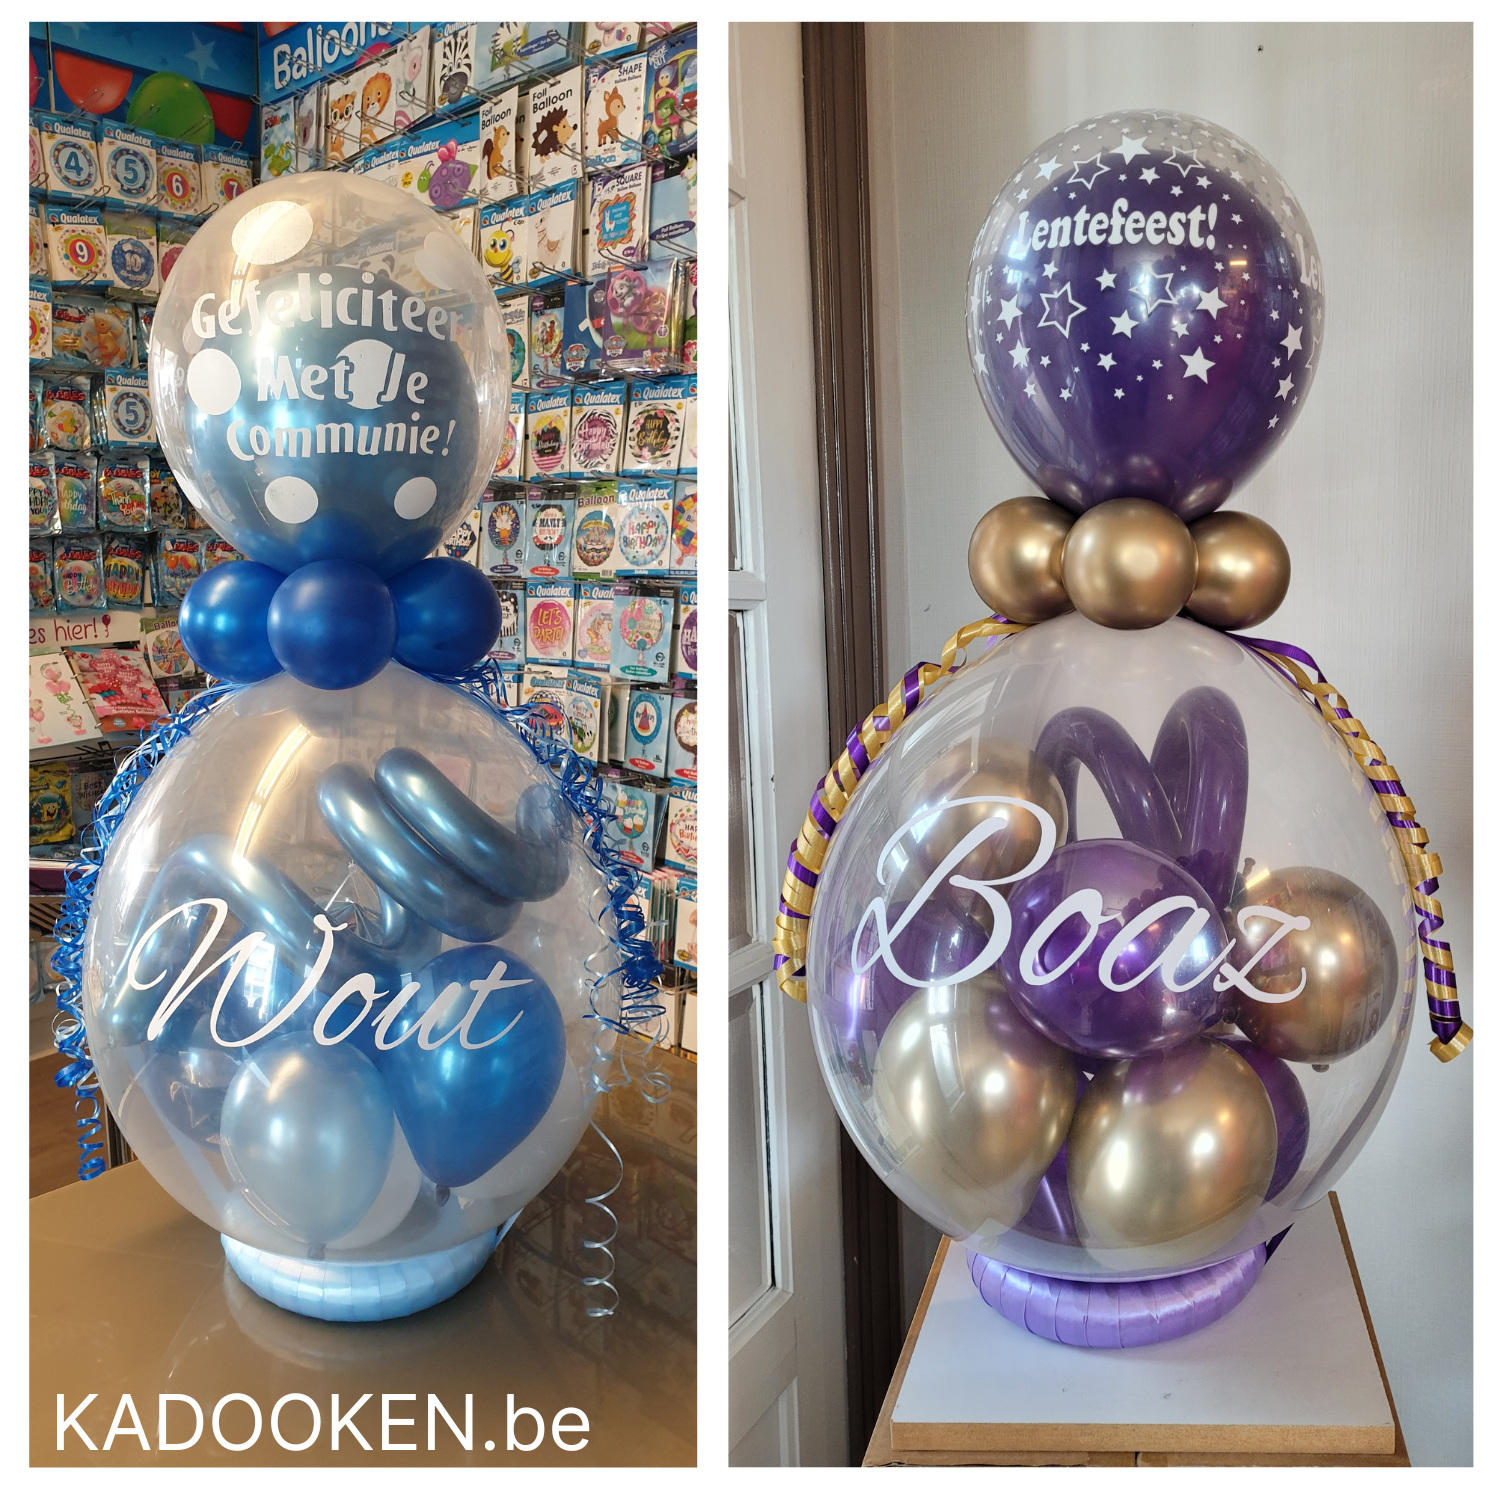 Eekhoorn kromme Vrijwel Geldballon/geschenkballon Communie met naam – KADOOKEN.be